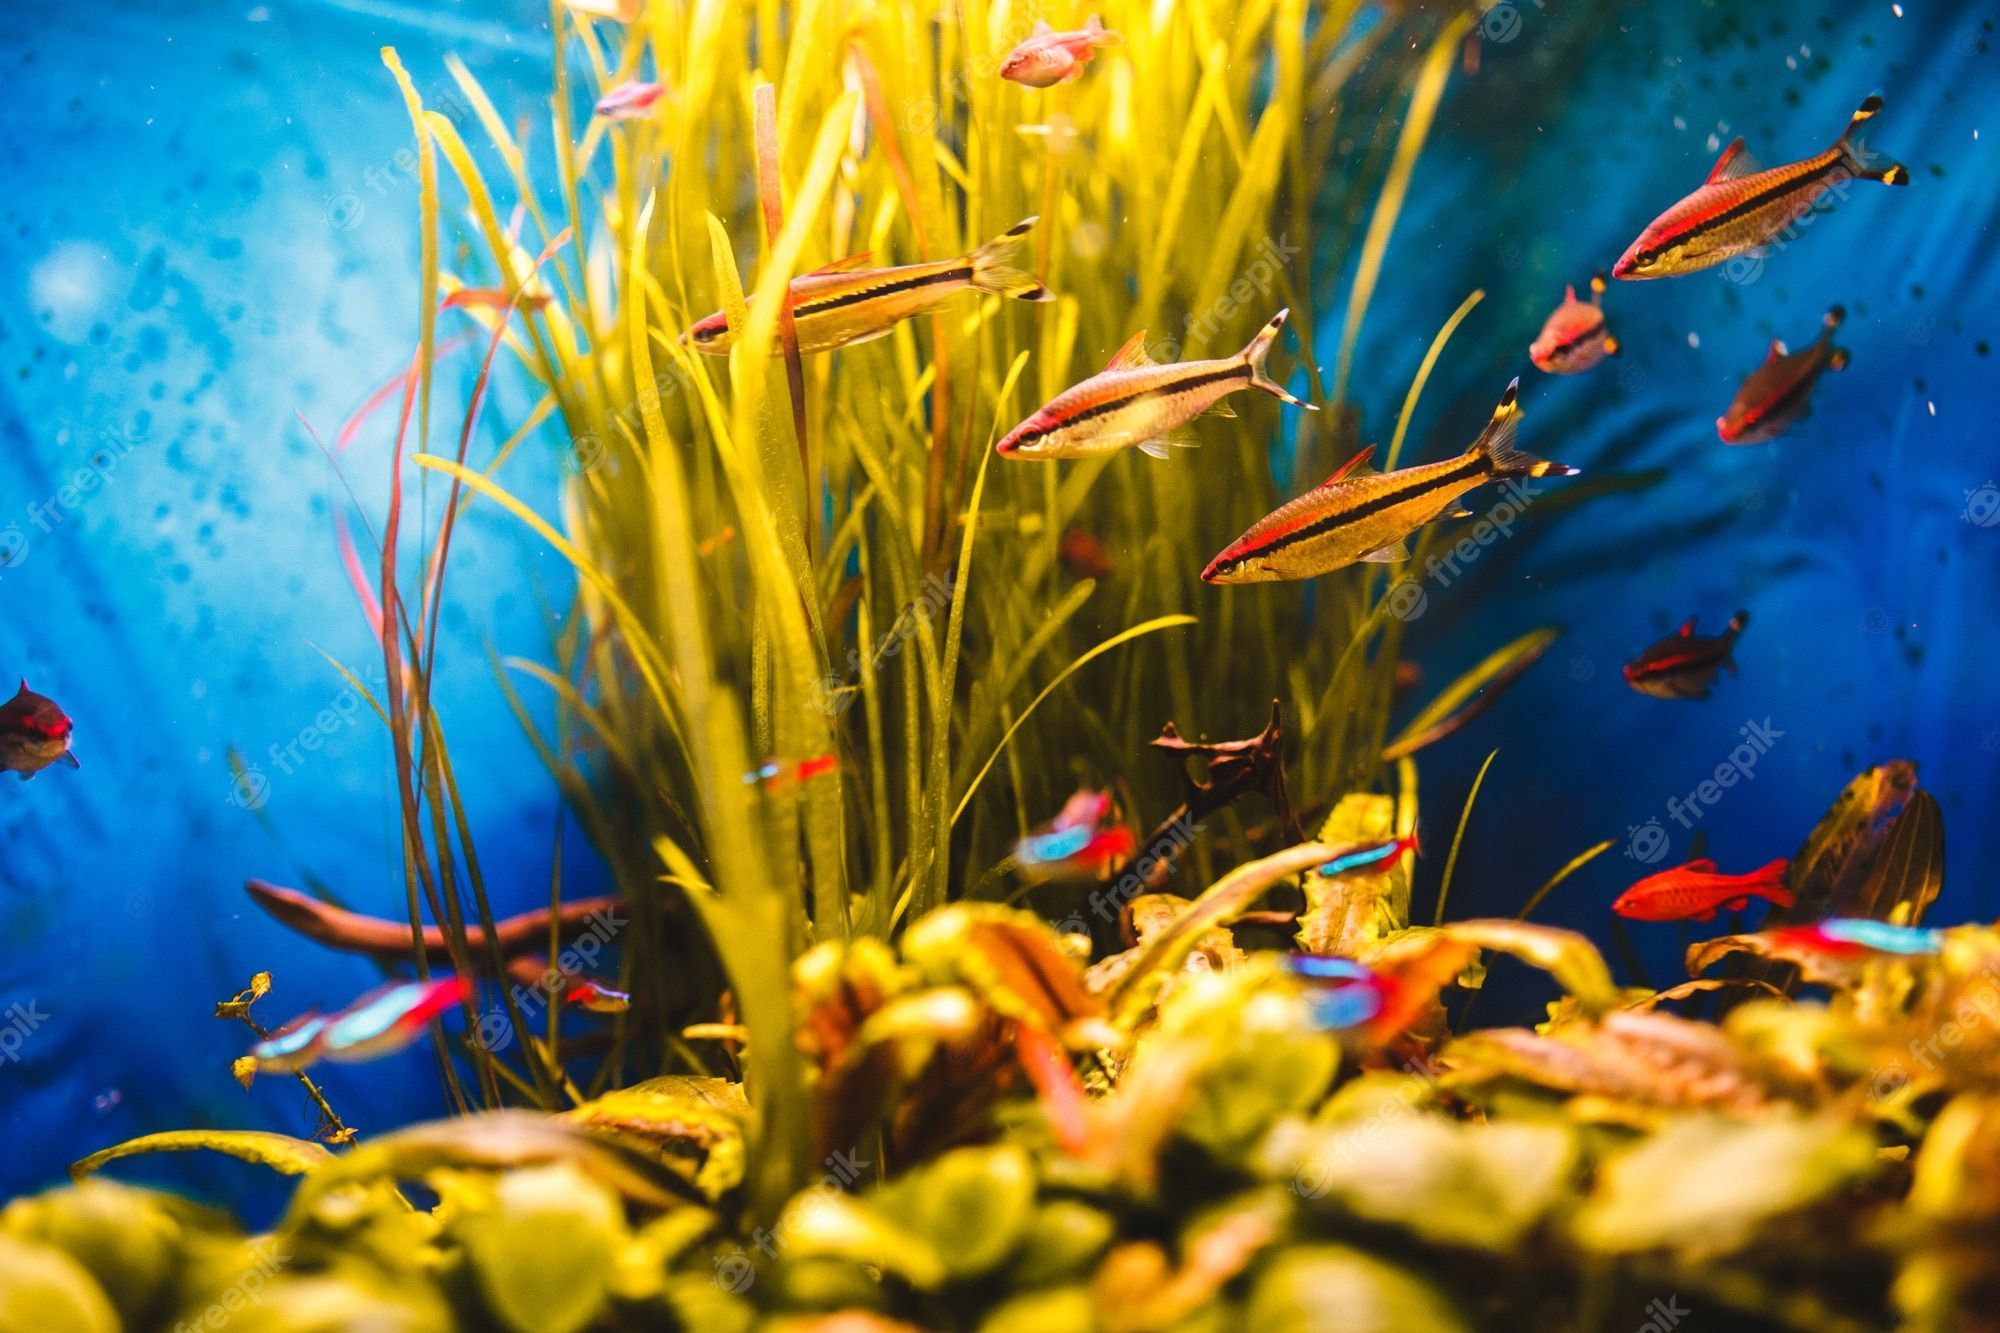  Aquarium Hintergrundbild 2000x1333. Fotos Hintergrund, Über 41.000 hochqualitative kostenlose Stockfotos